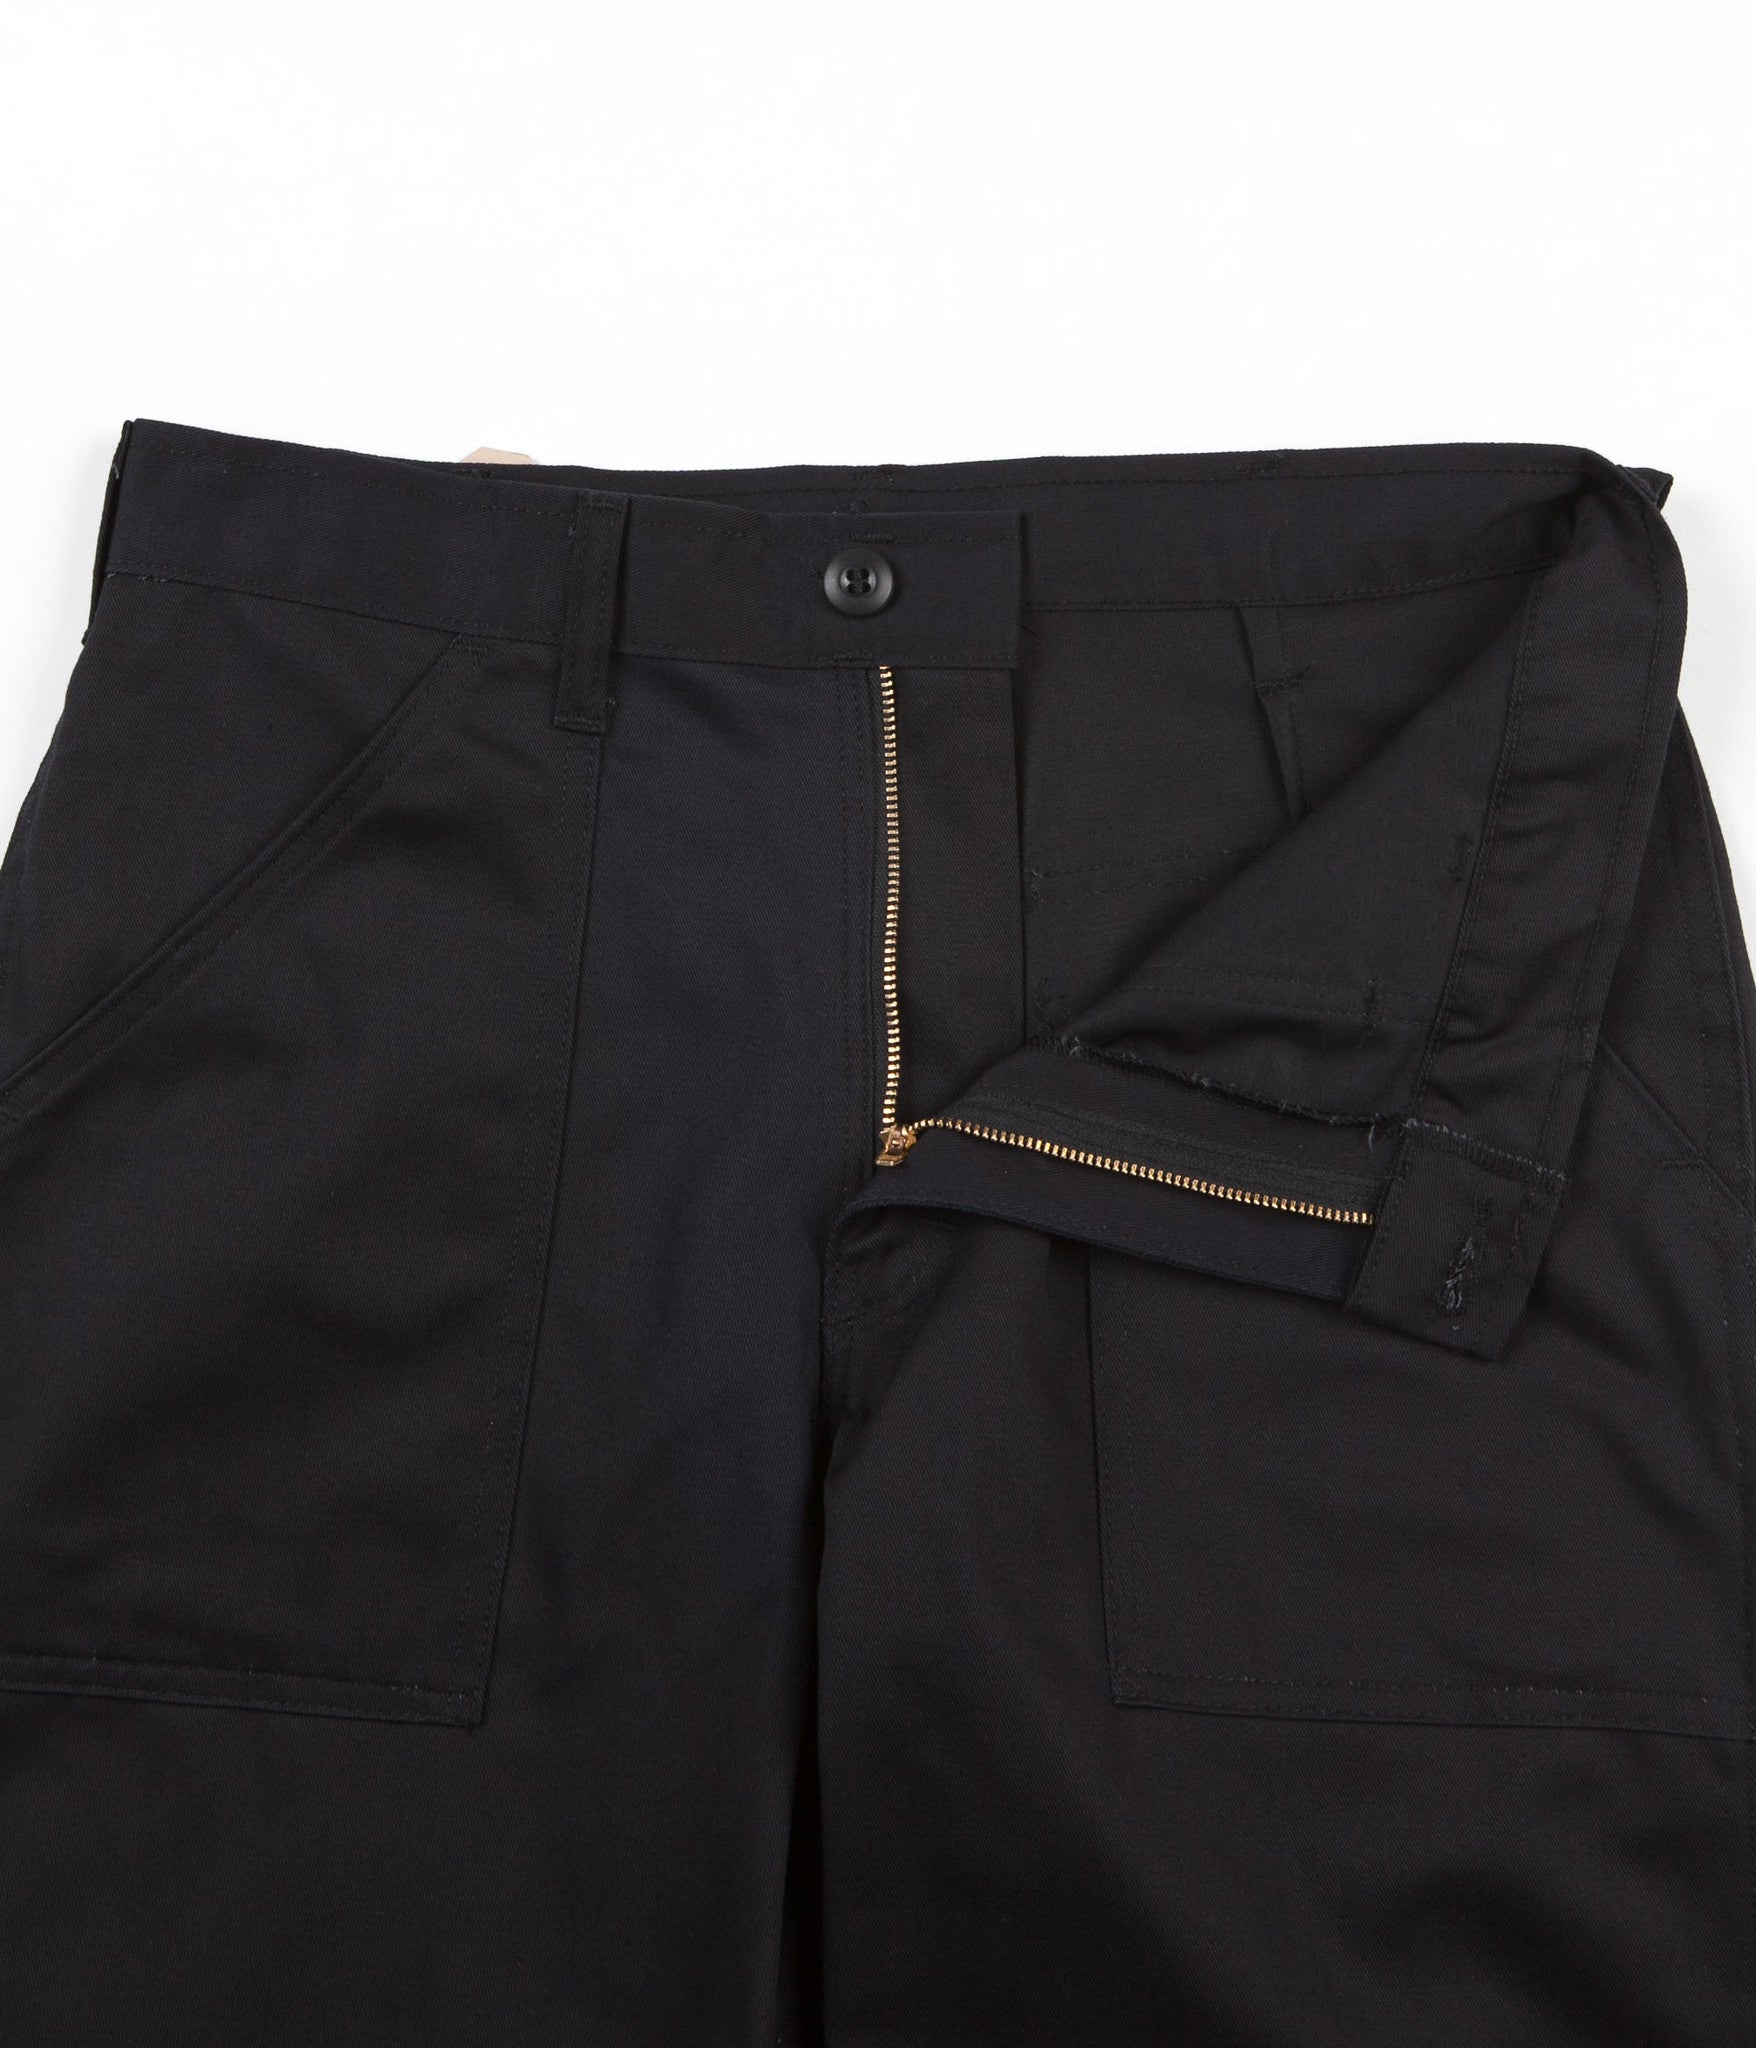 Stan Ray Taper Fit 4 Pocket Fatigue Trousers - Black Twill | Flatspot